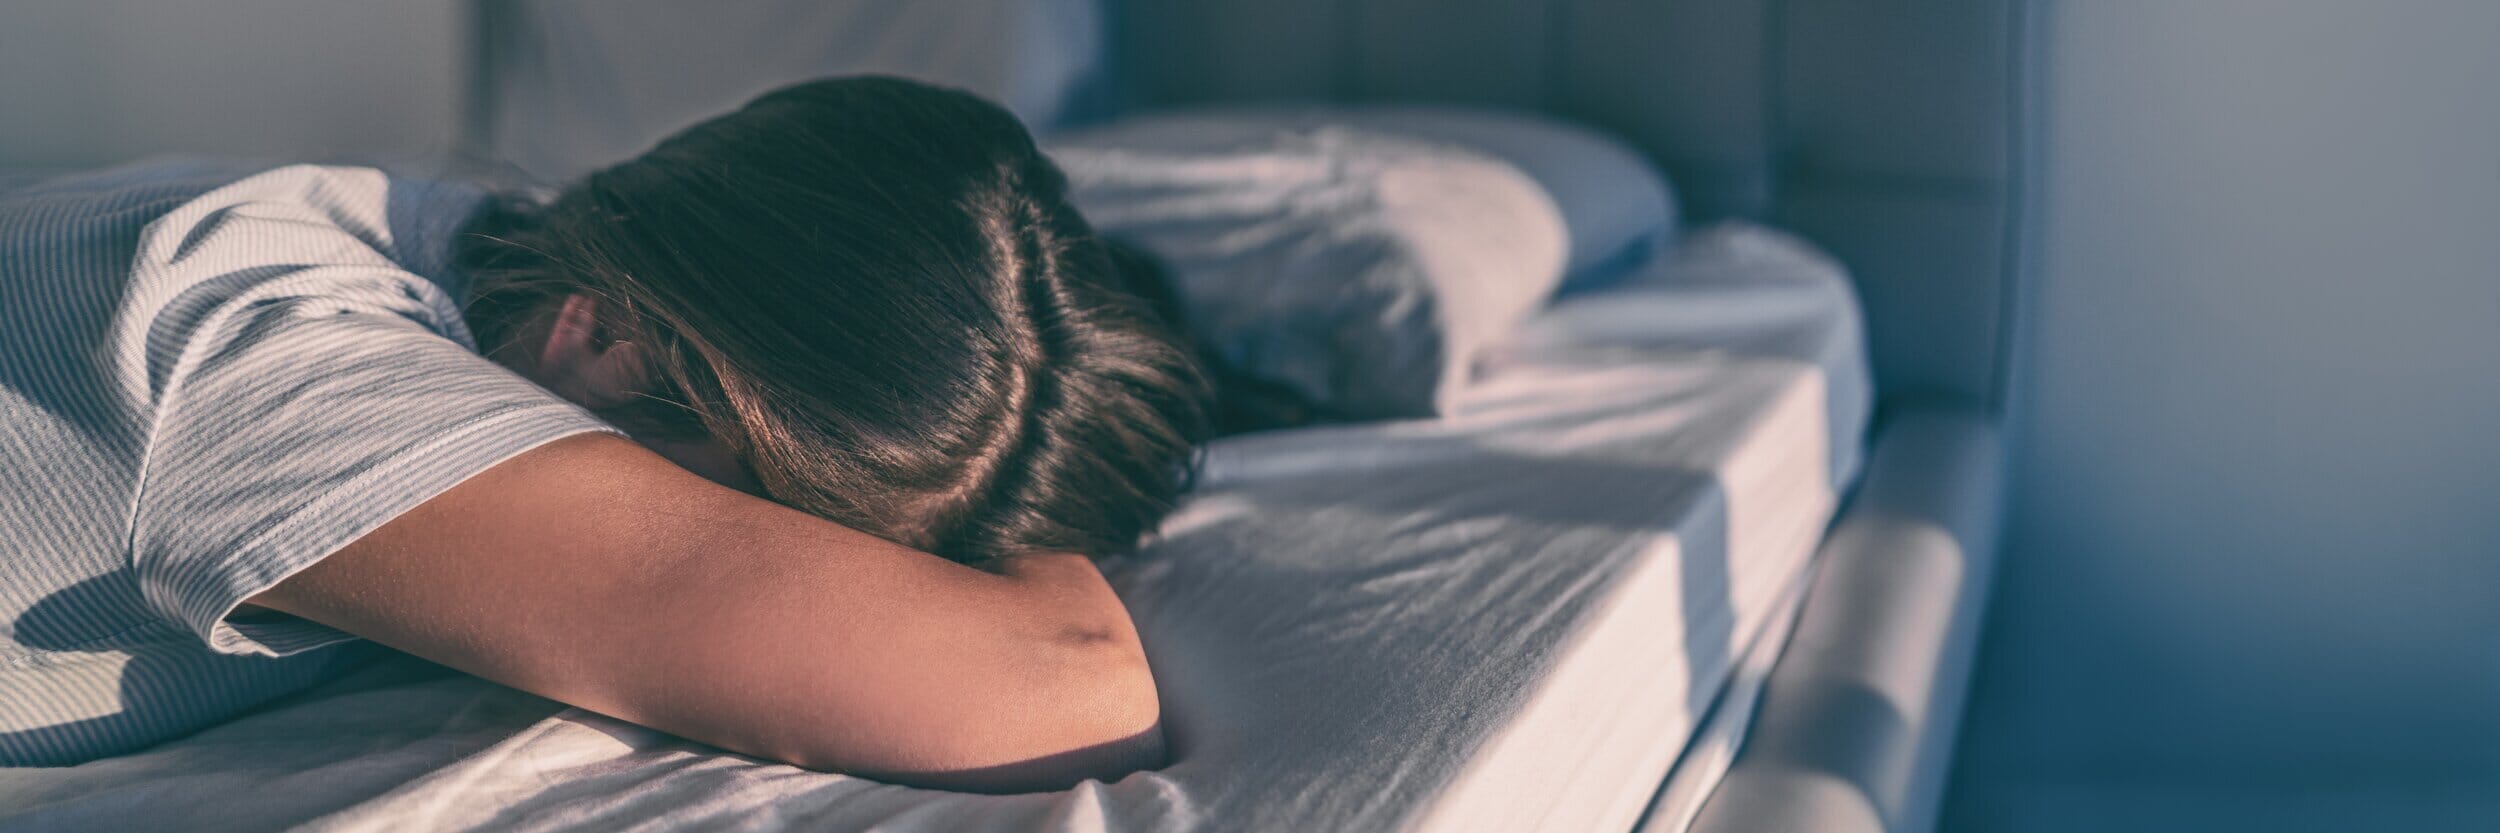 woman in bed suffering infertility ptsd symptoms